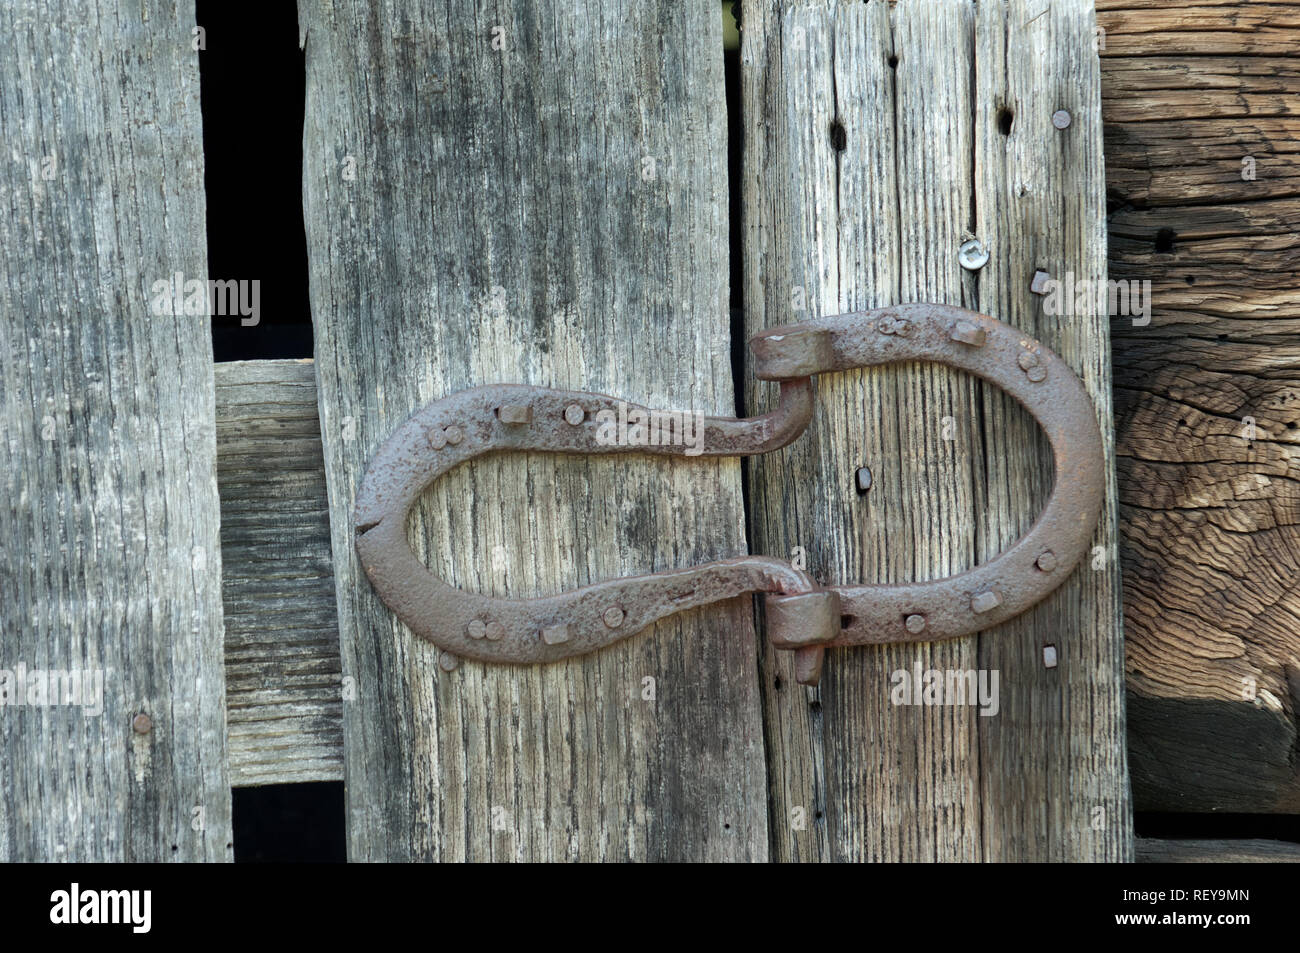 Charnières à la main faite de fer à cheval, le parc national des Great Smoky Mountains, frontière de NC et TN. Photographie numérique Banque D'Images